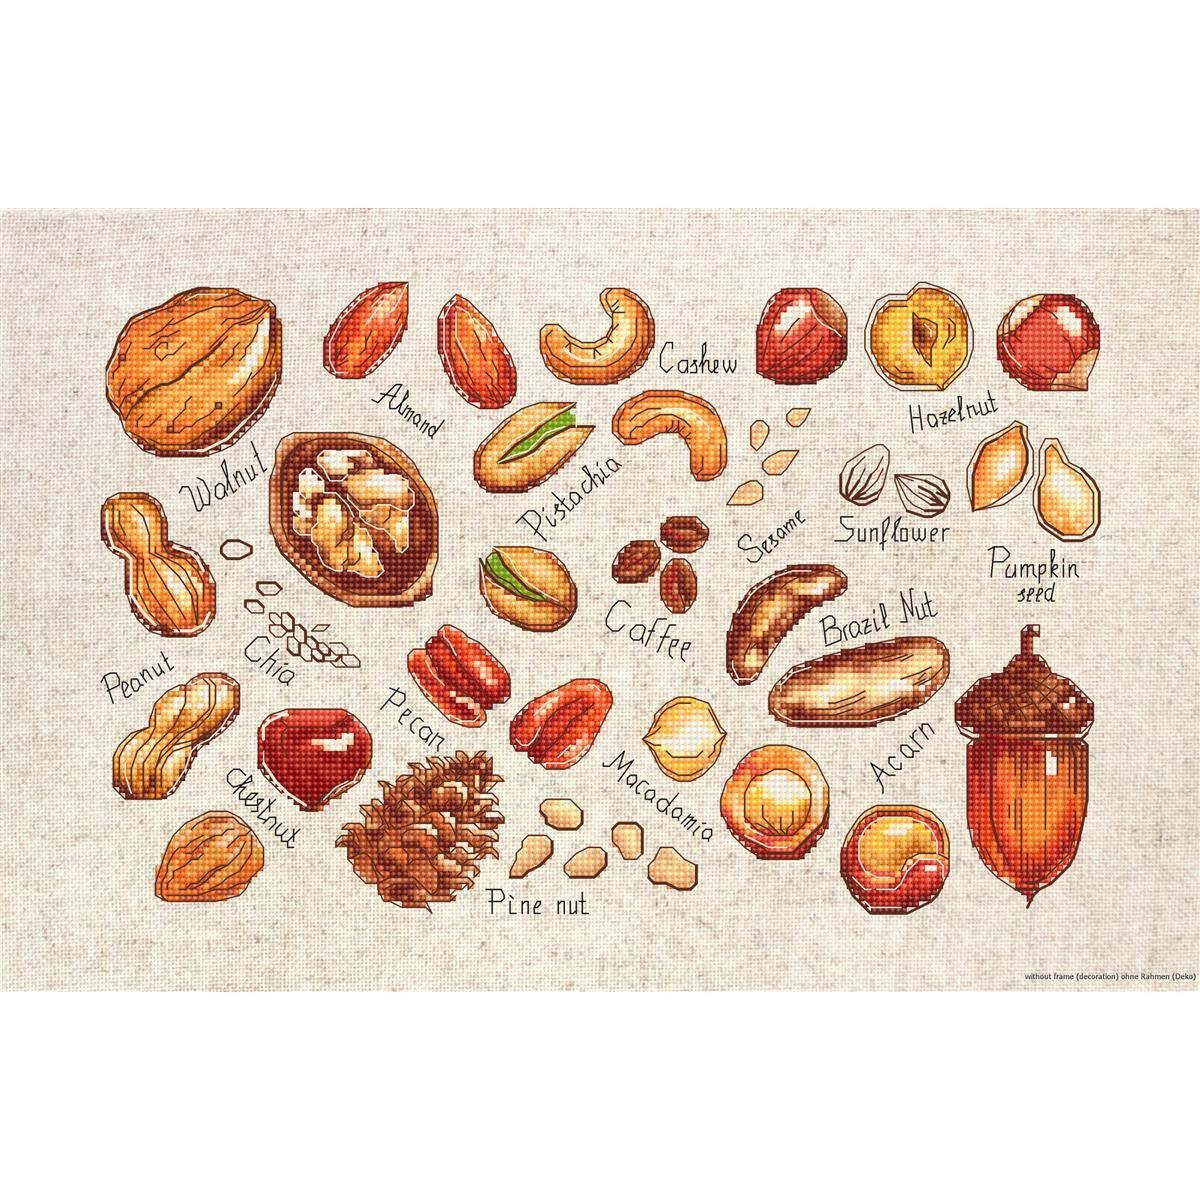 Иллюстрированные символы различных орехов и семечек...